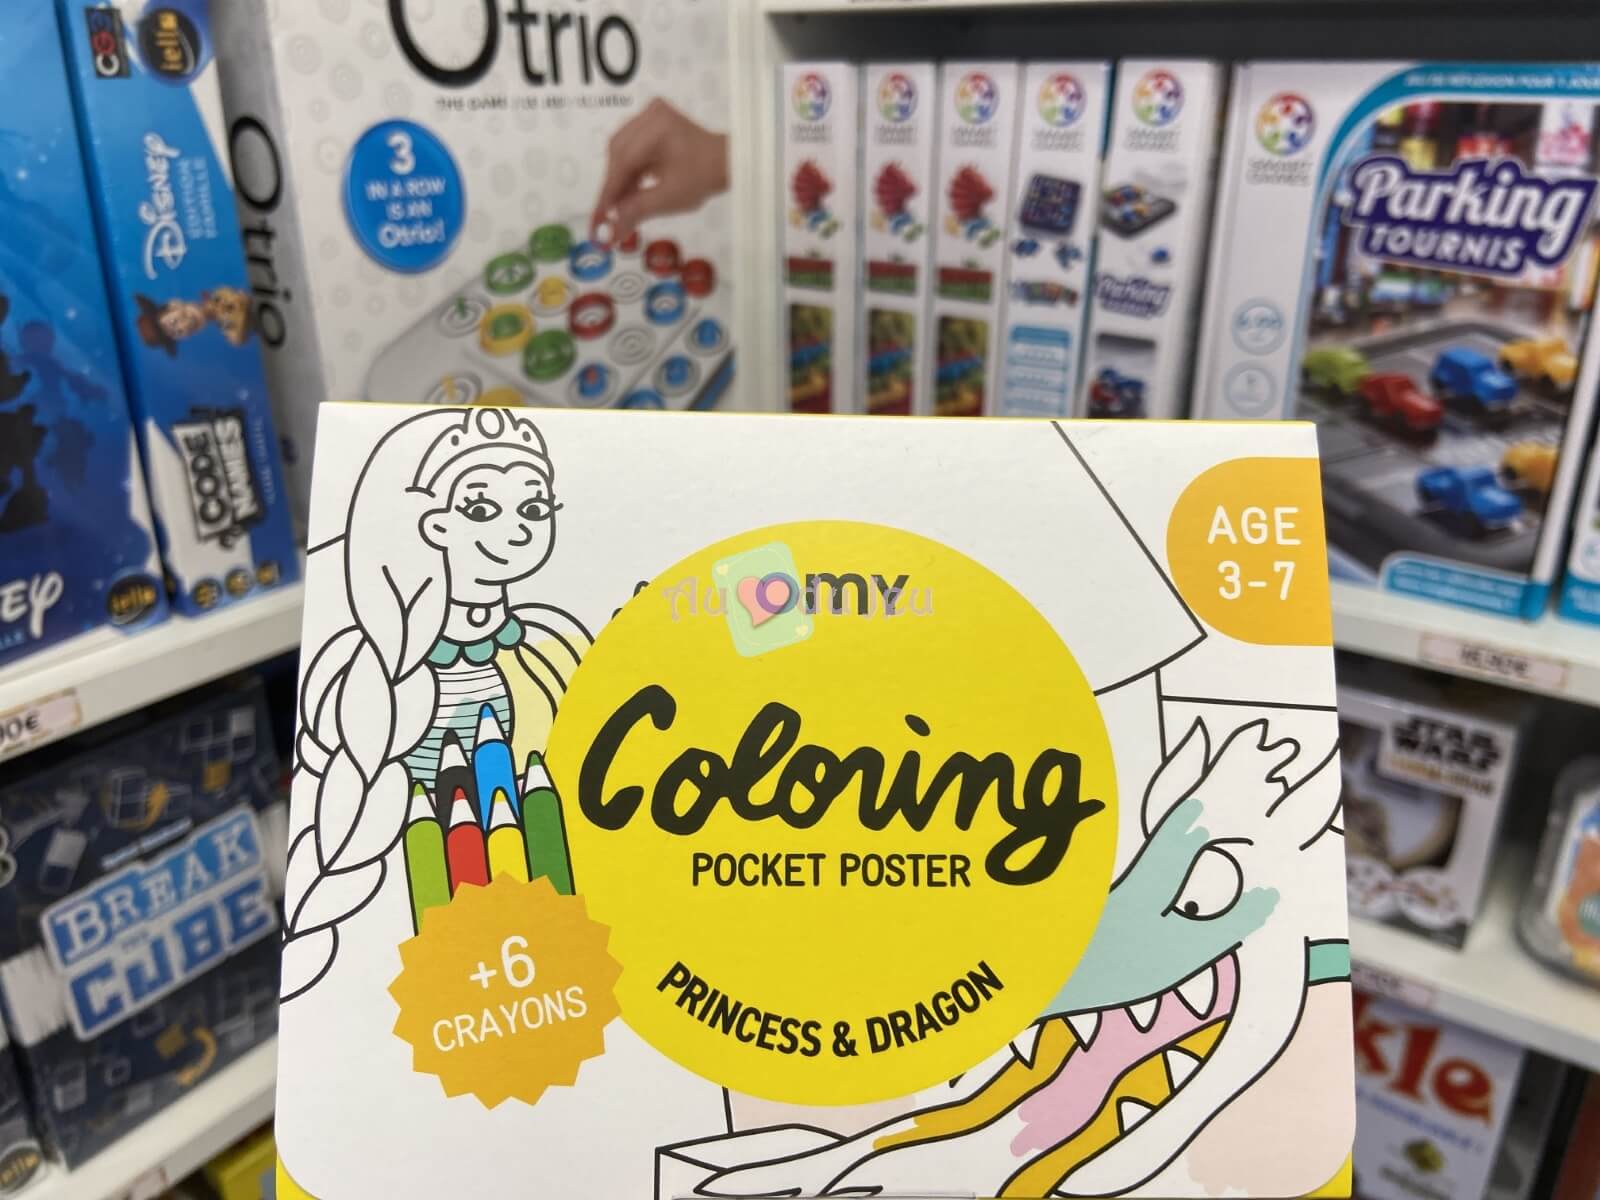 Coloring Pocket Princess & Dragons OMY